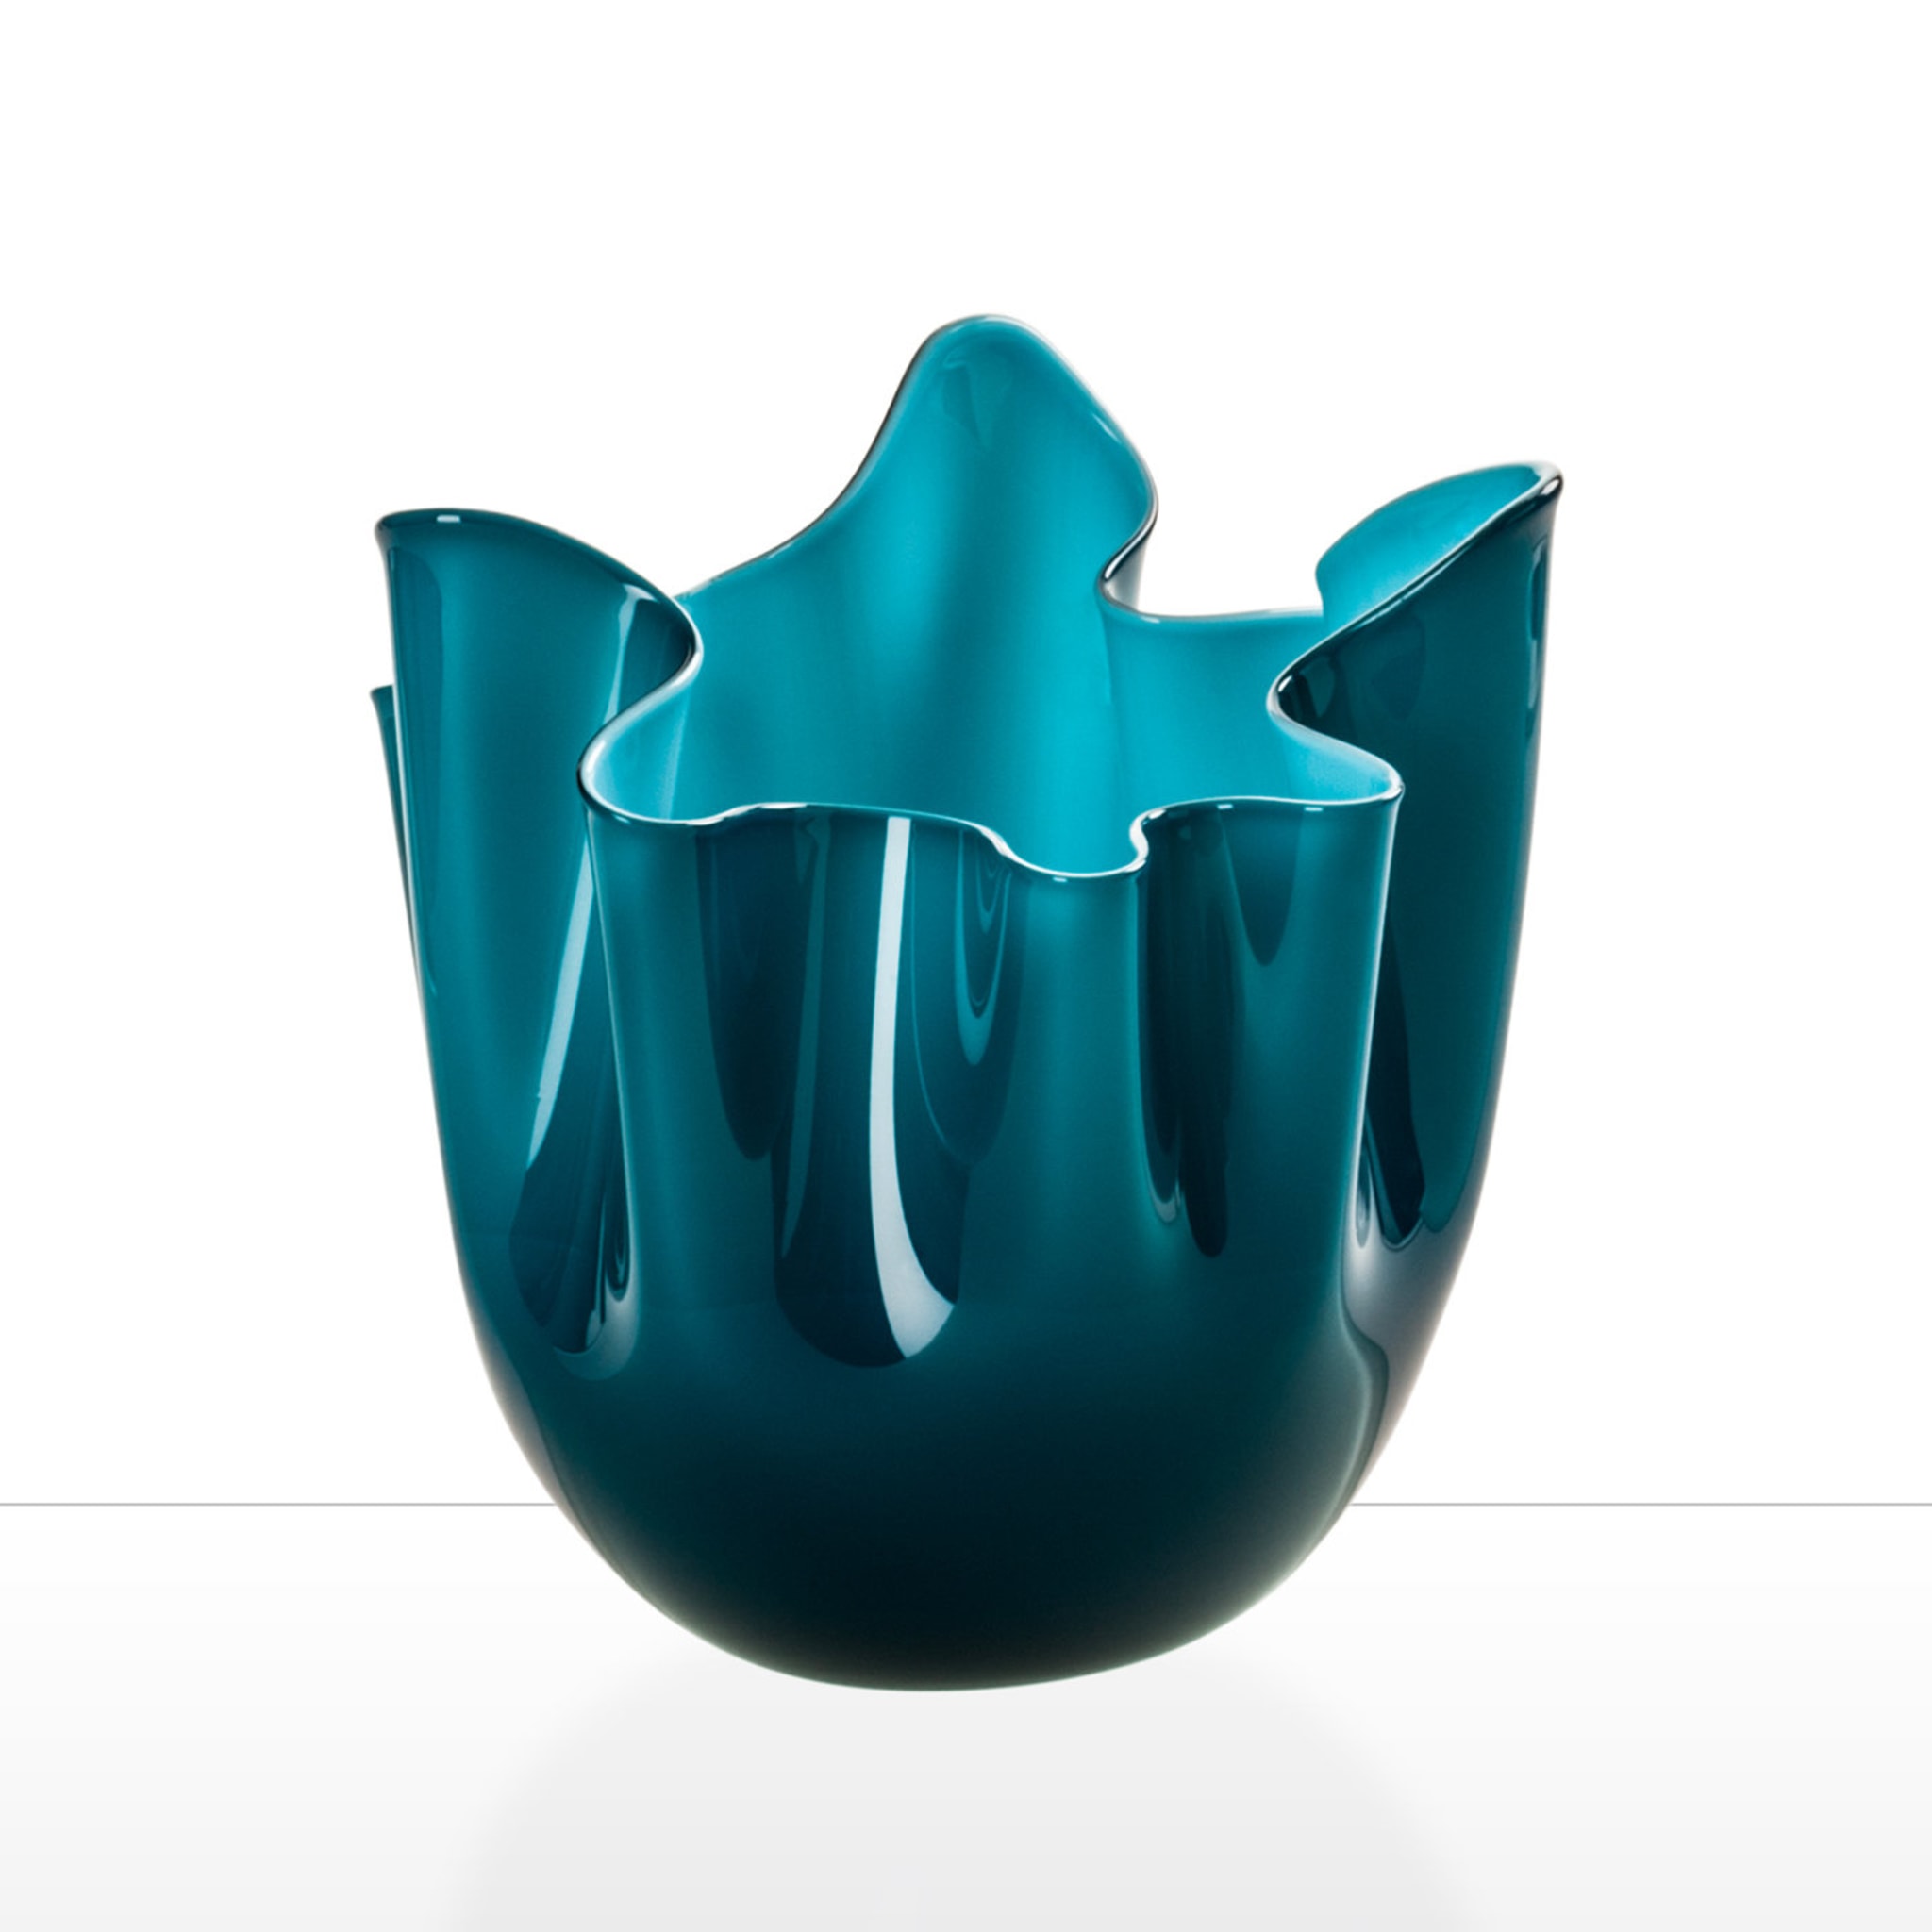 Fazzoletto Opalini Cerulean Vase by Fulvio Bianconi - Alternative view 1